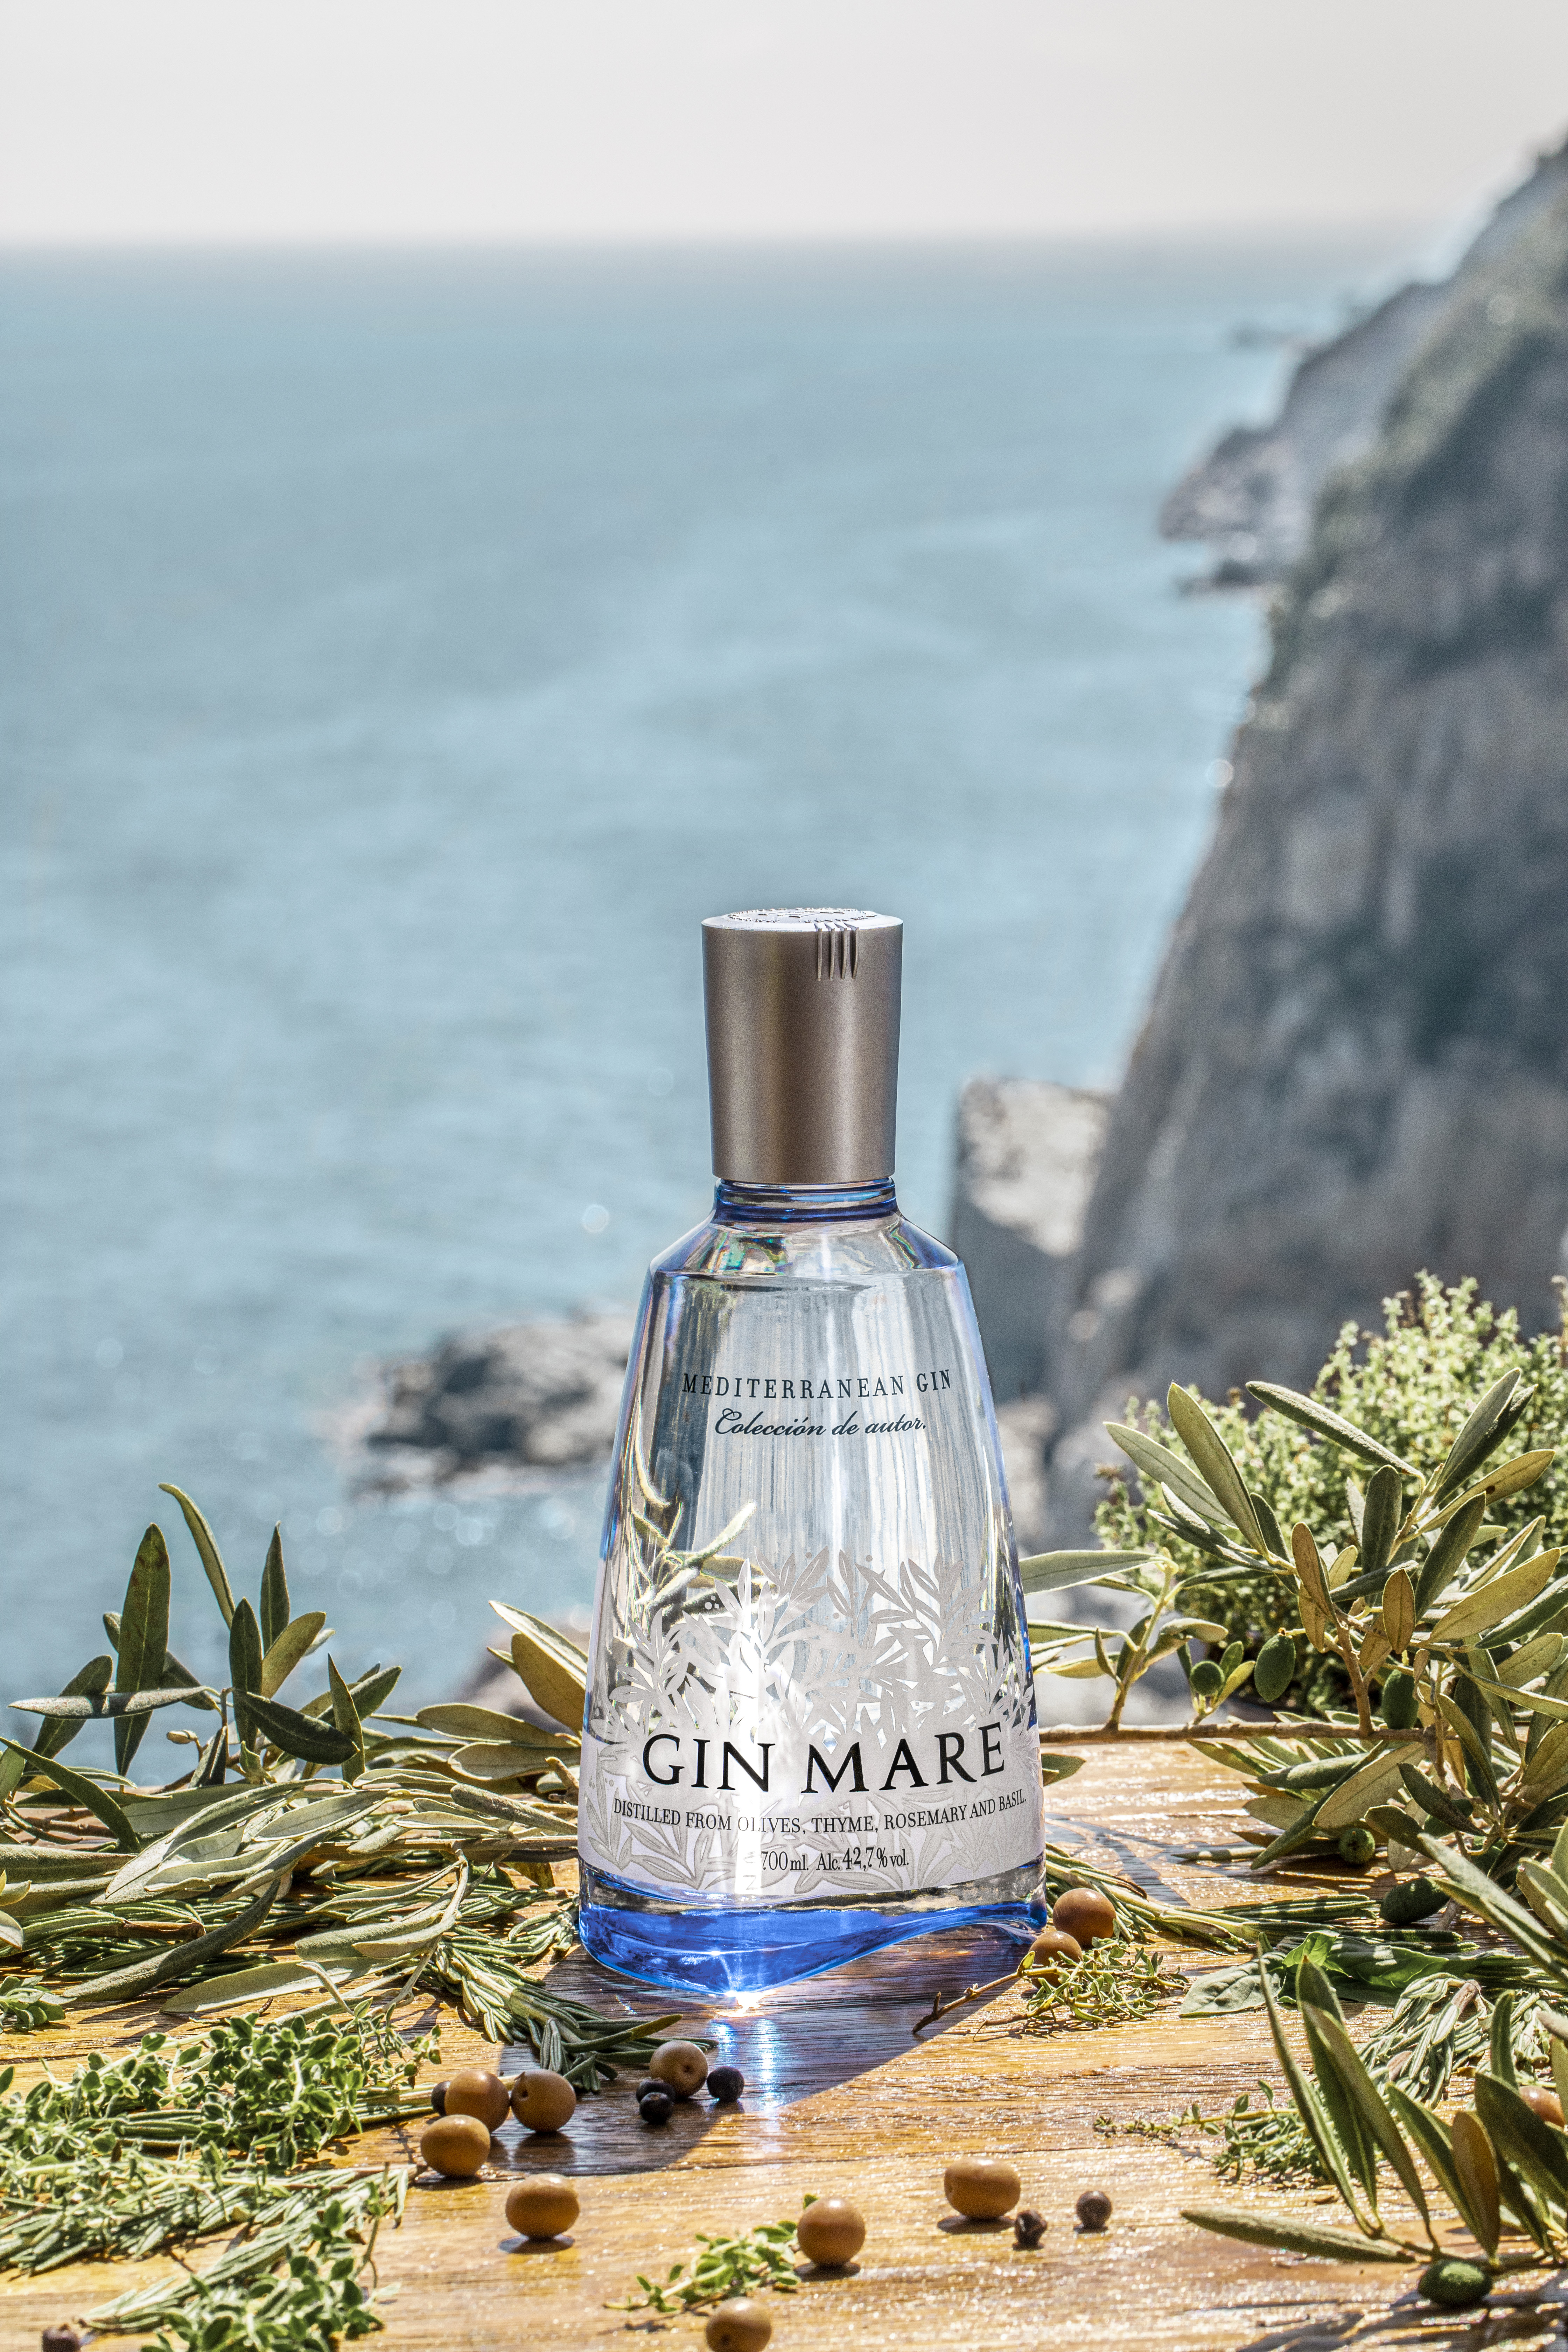 Mare Gin Mediterranean Gin